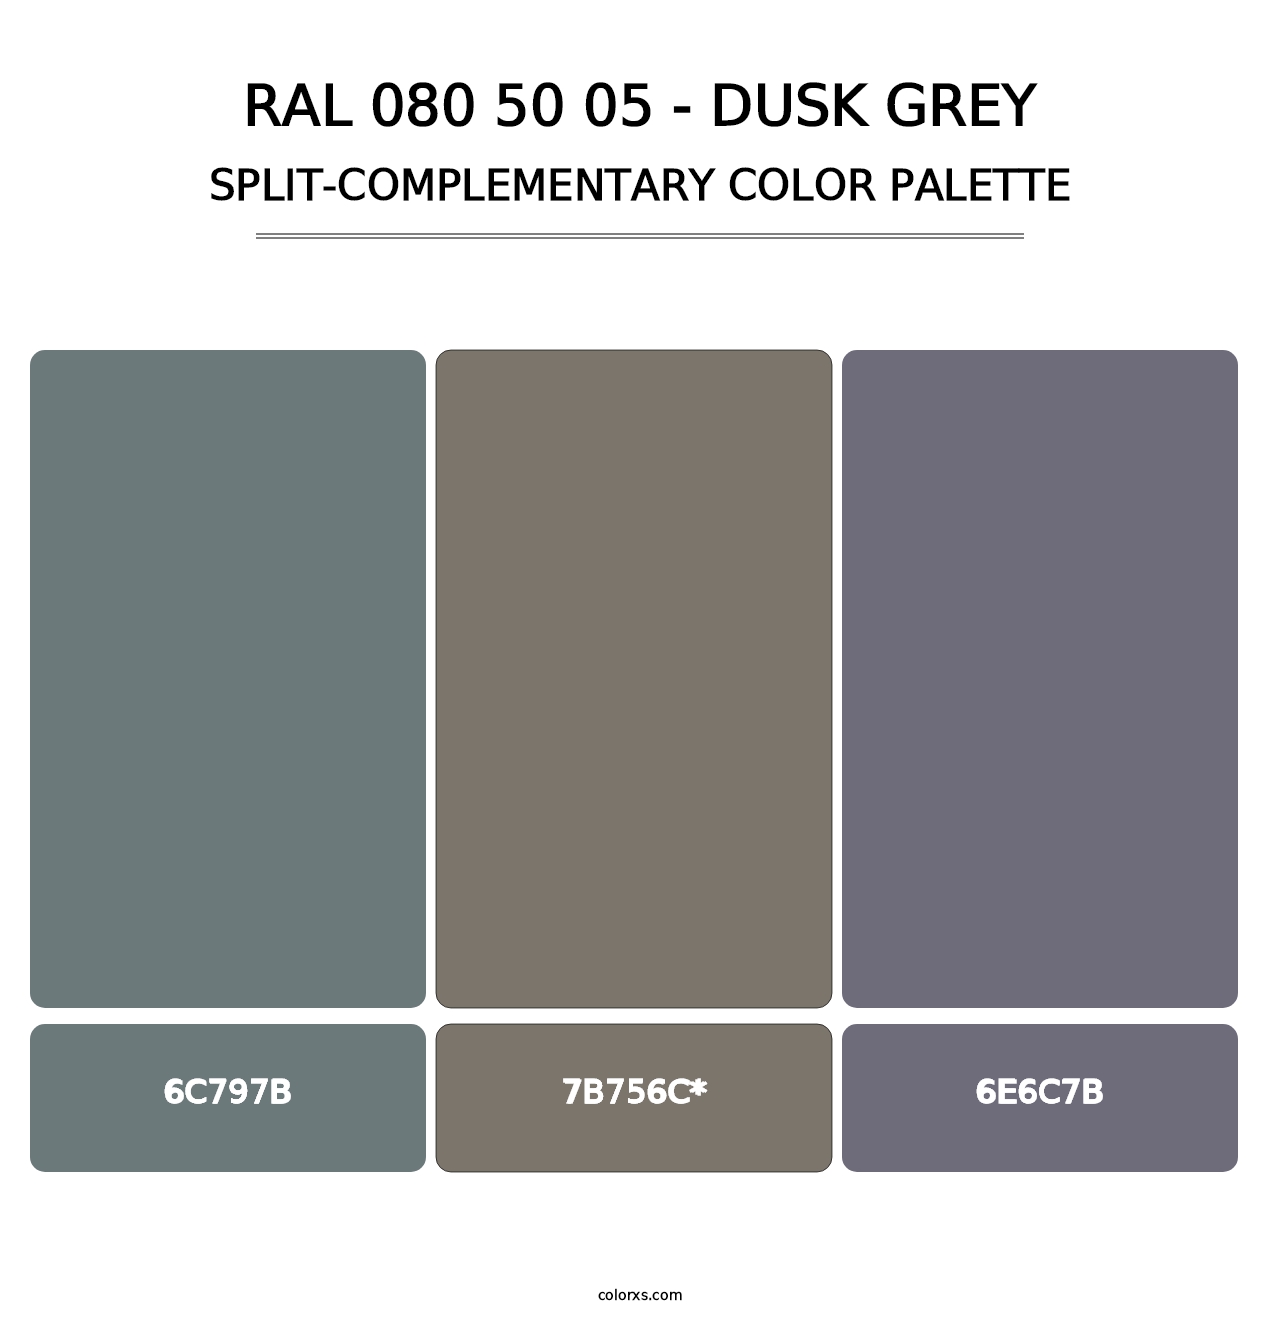 RAL 080 50 05 - Dusk Grey - Split-Complementary Color Palette